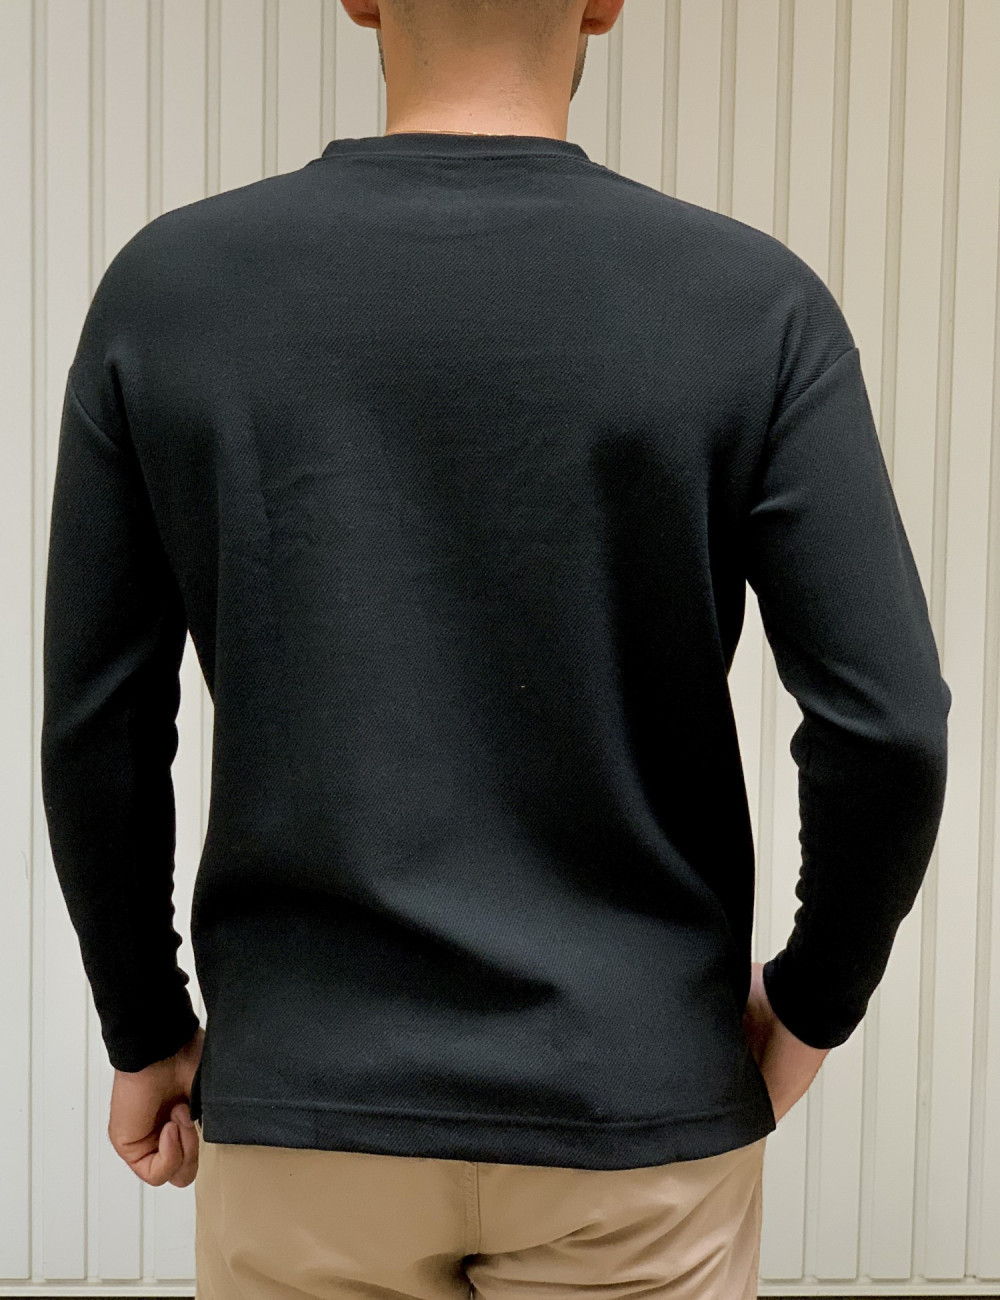 Ανδρική μαύρη μακρυμάνικη μπλούζα με ανάγλυφο ύφασμα 1136